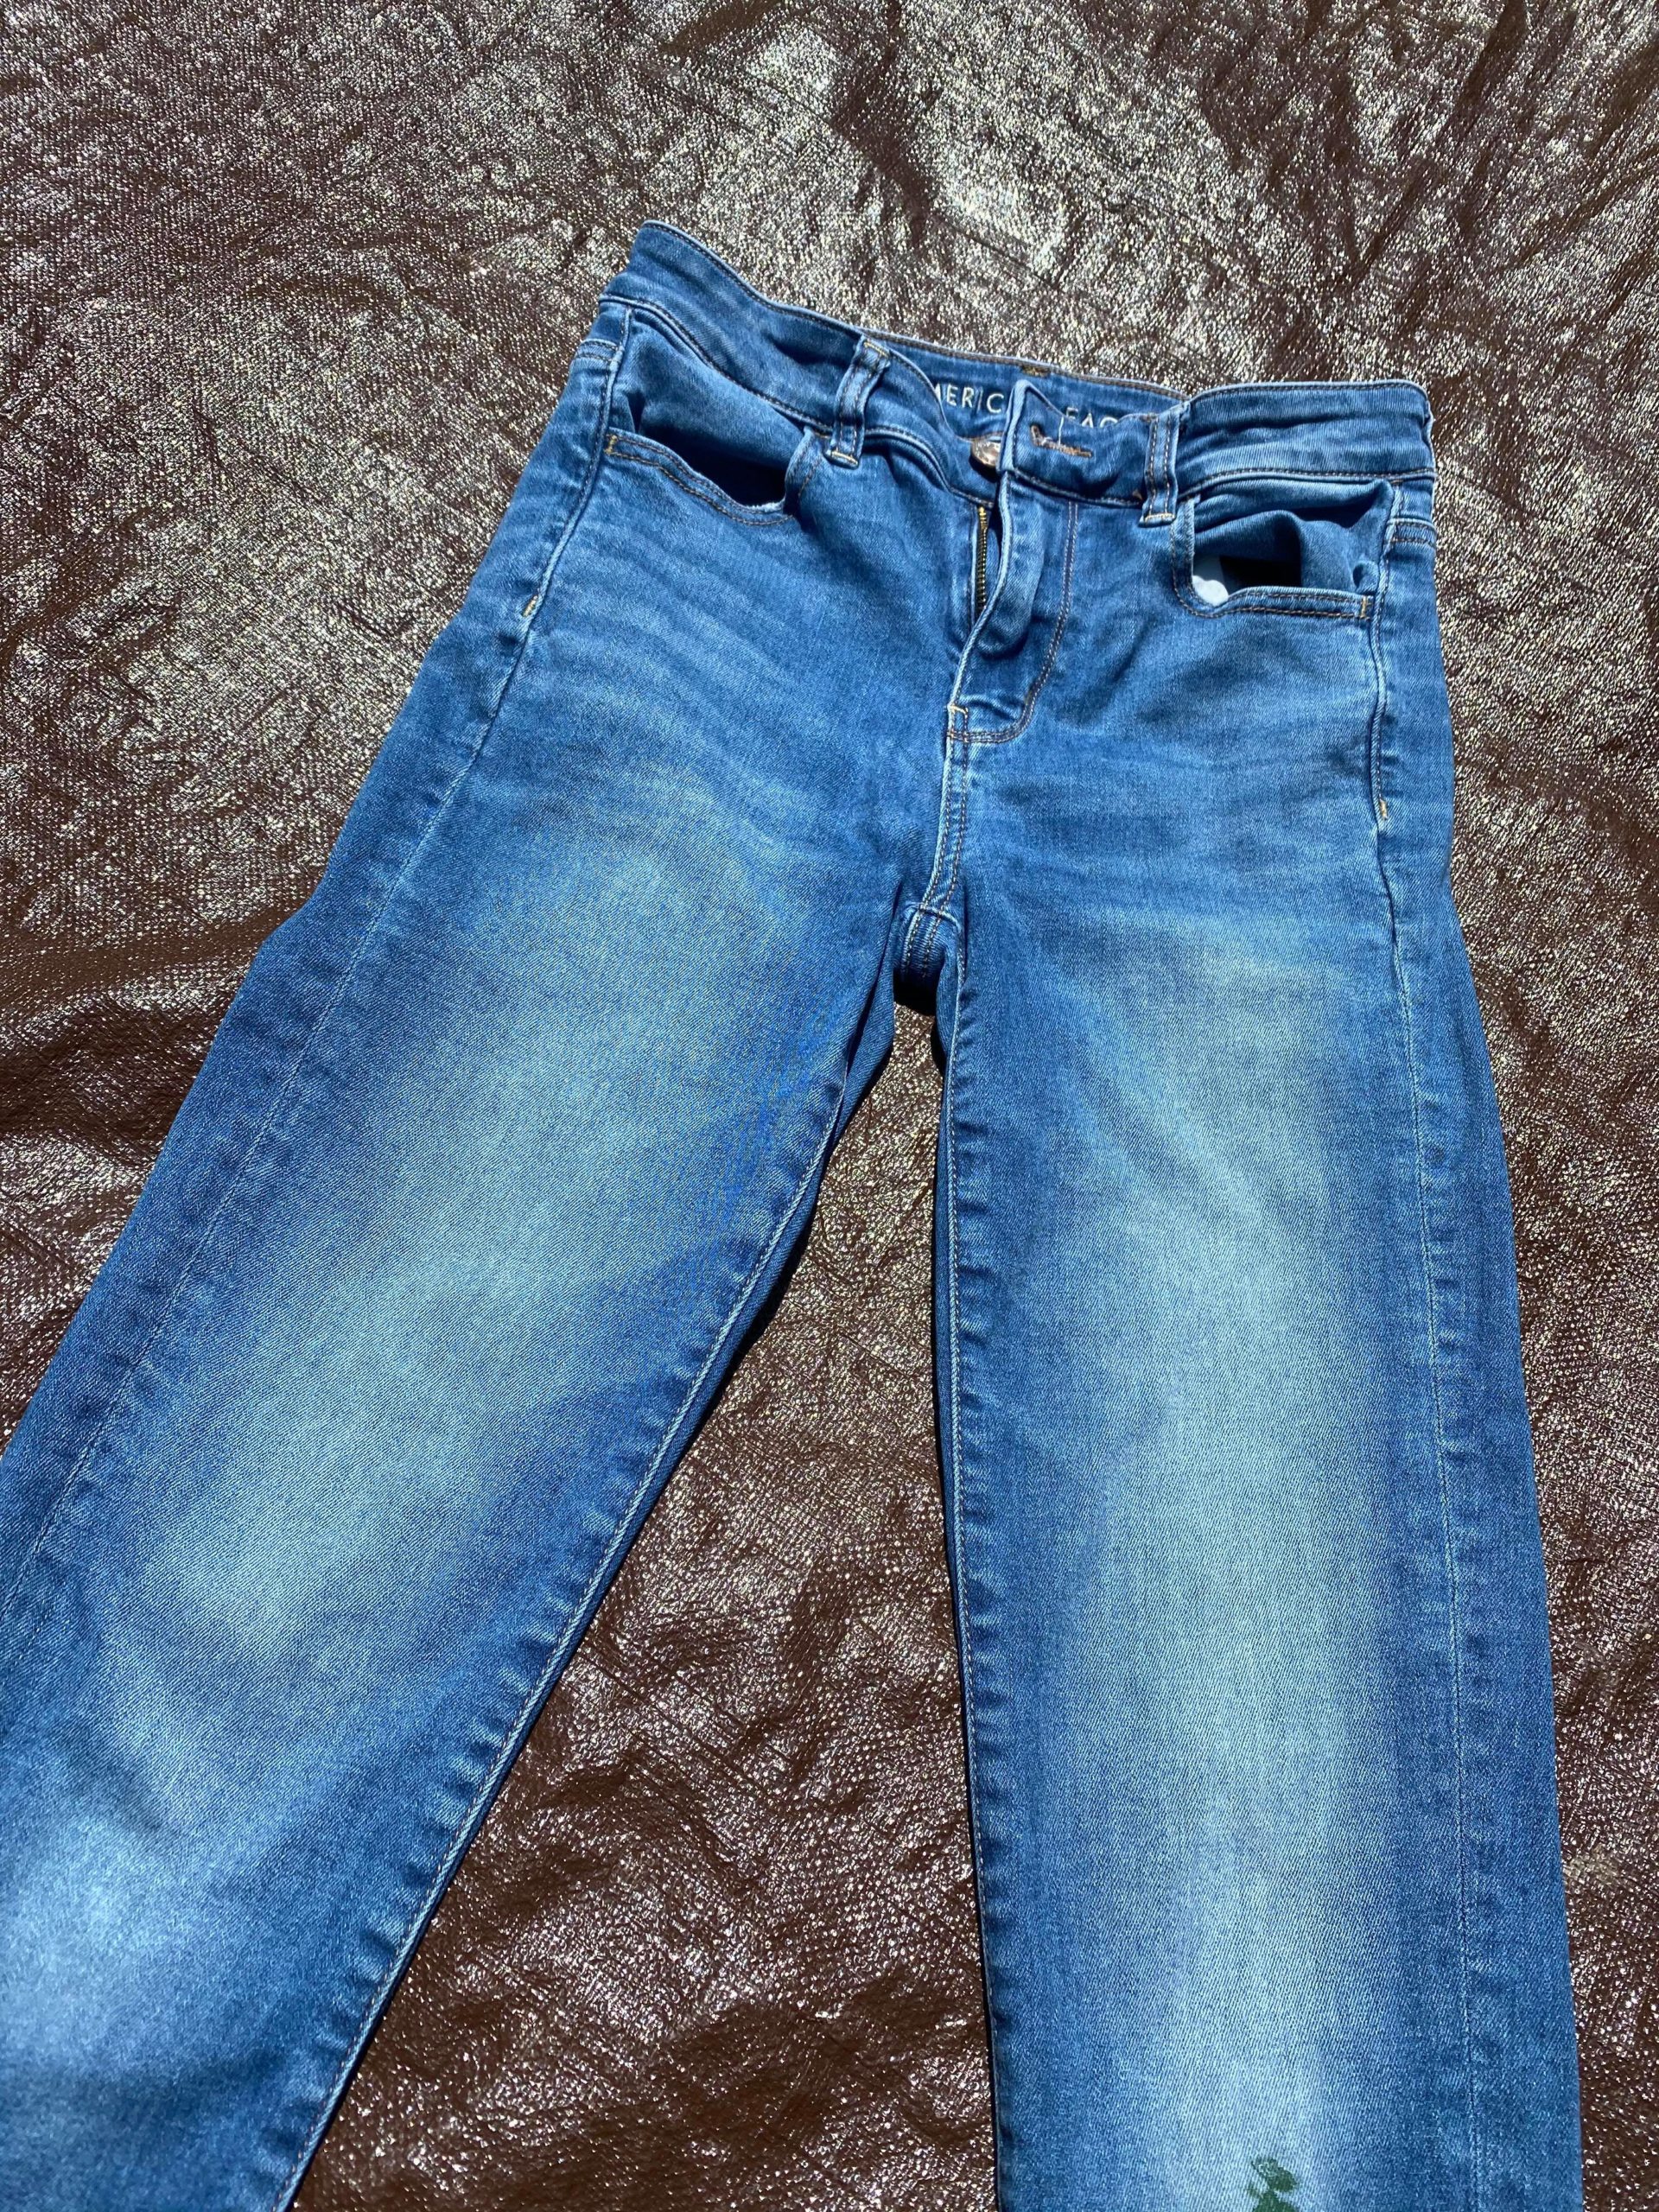 DIY Paint Splatter Jeans - The Shabby Tree